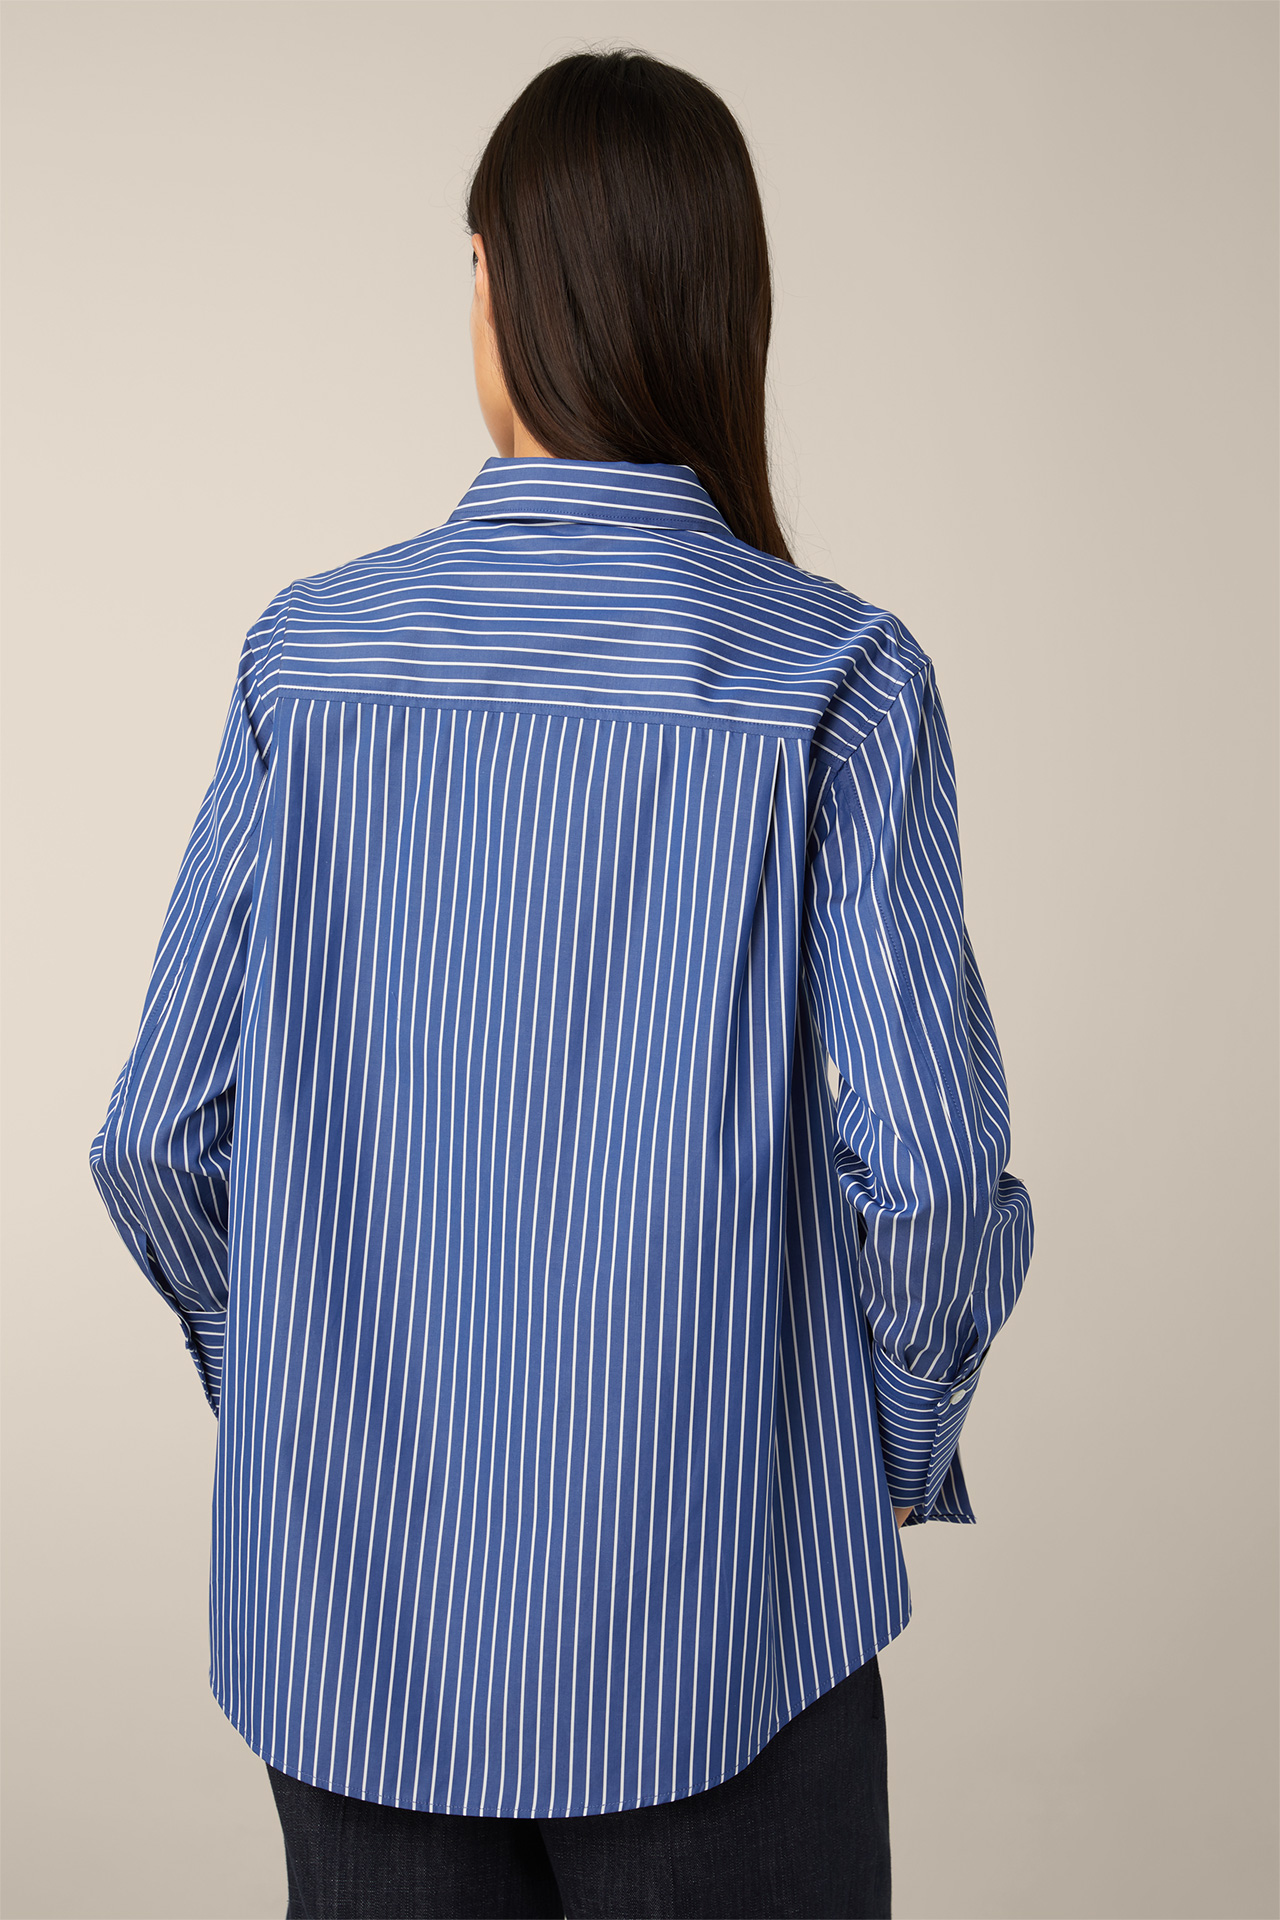 Popeline-Baumwoll-Streifen-Hemd-Bluse in im windsor. gestreift Online-Shop - Blau-Weiß